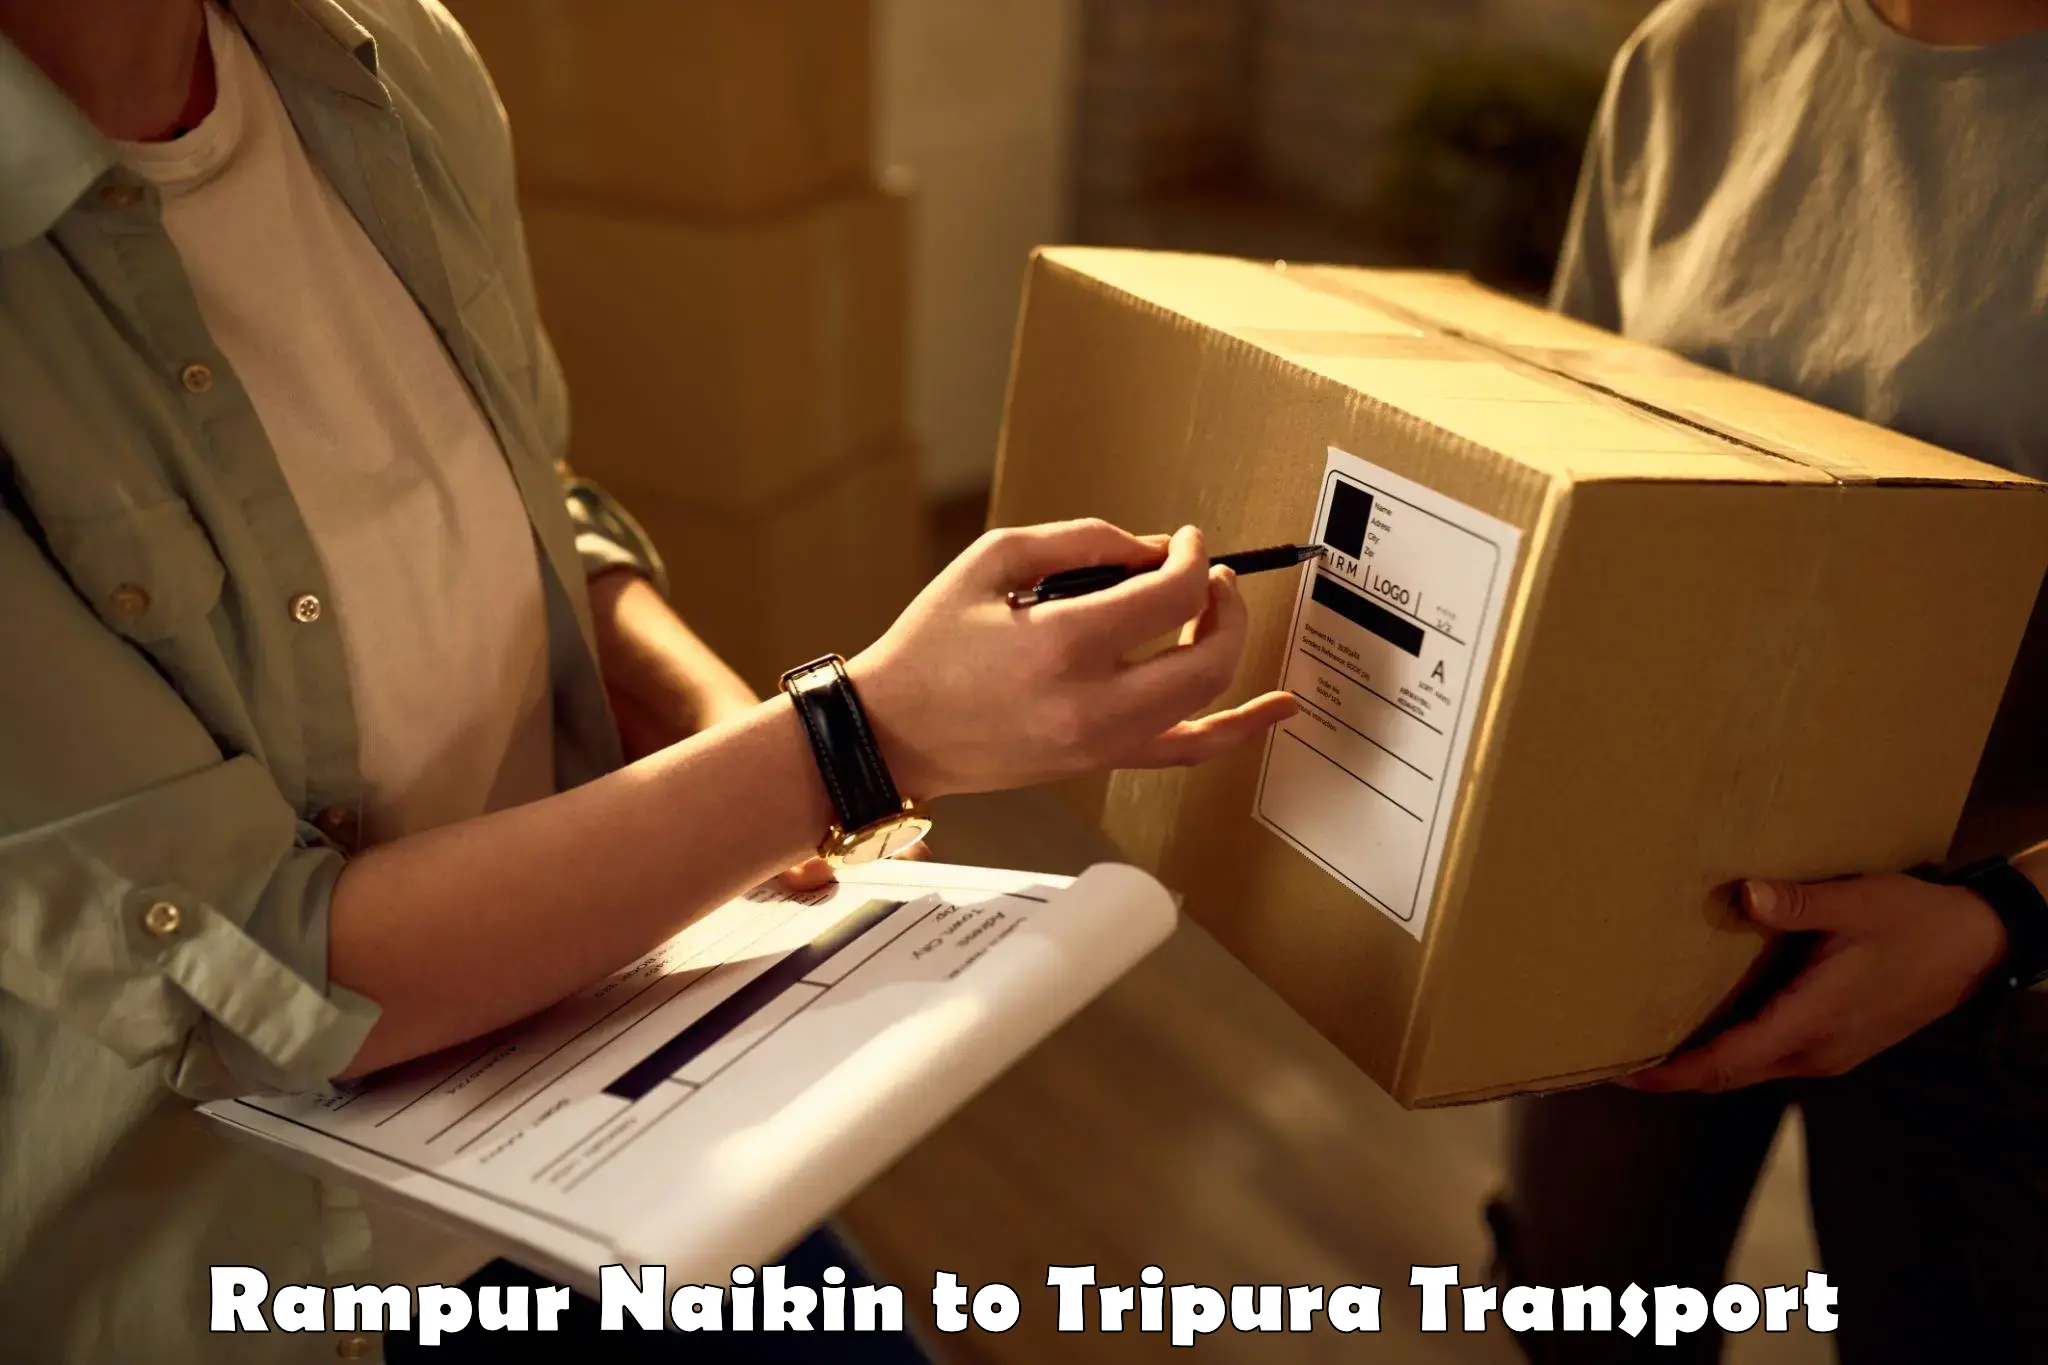 Furniture transport service Rampur Naikin to Aambasa